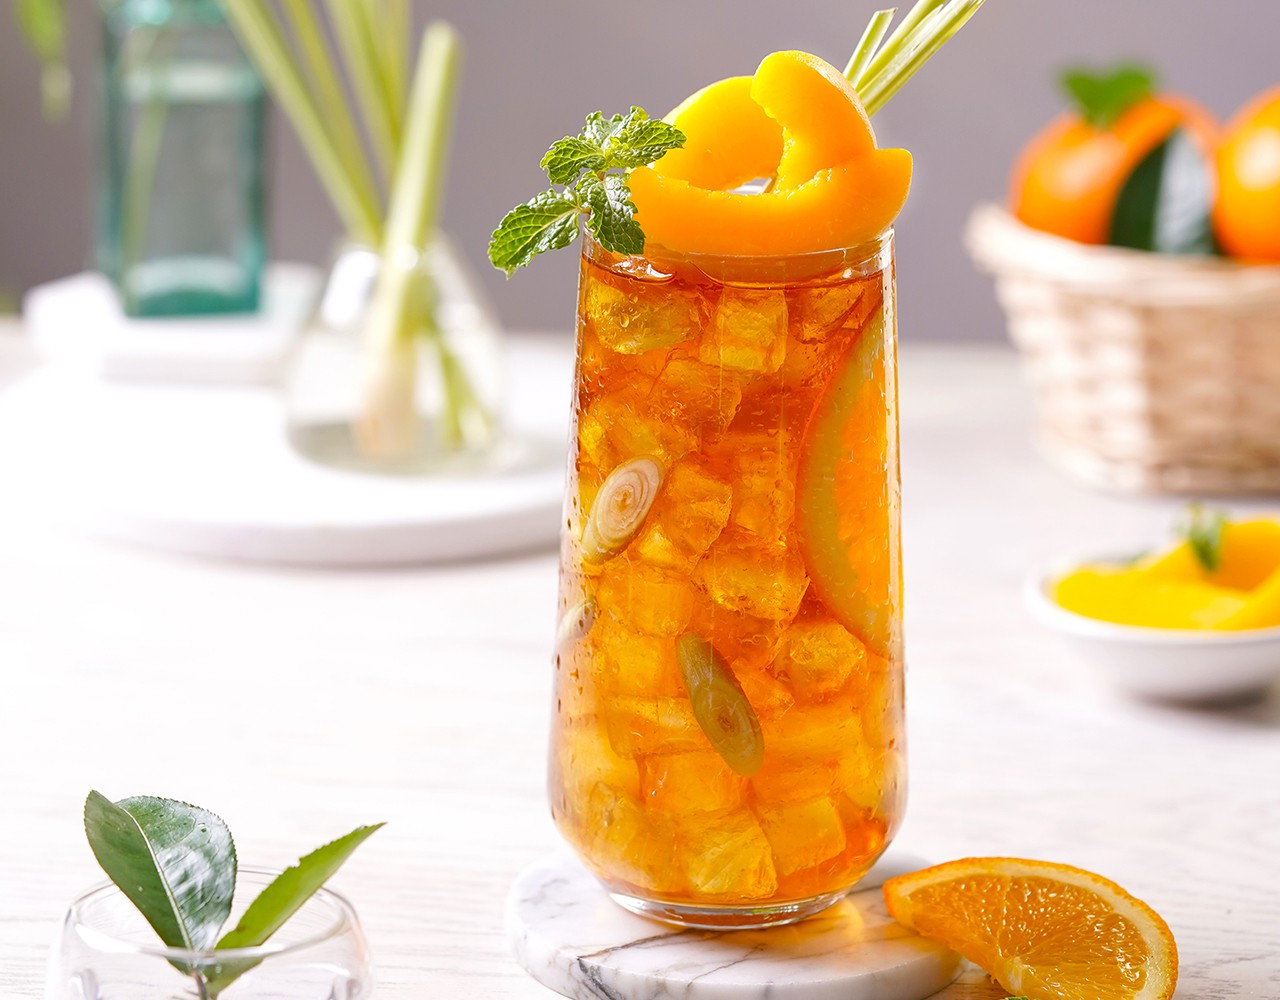 Trà đào cam sả - Thức uống thơm ngon giải khát cho những ngày hè